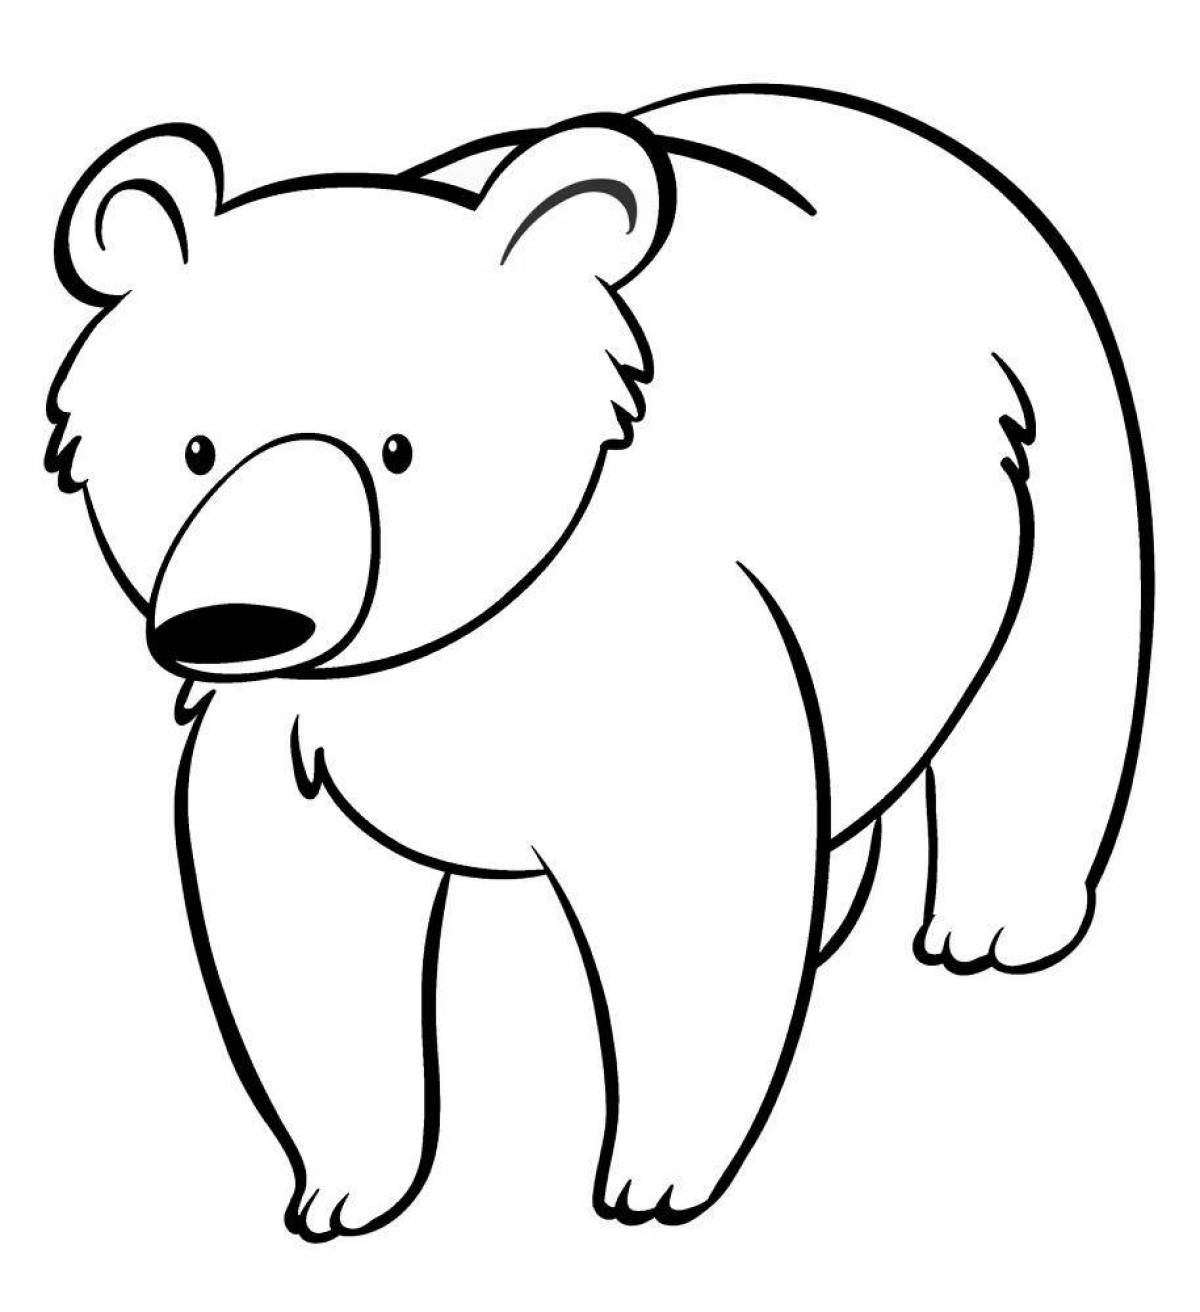 Распечатка медведя. Медведь раскраска. Раскраска. Медвежонок. Медведь раскраска для детей. Медведь картинка для детей раскраска.